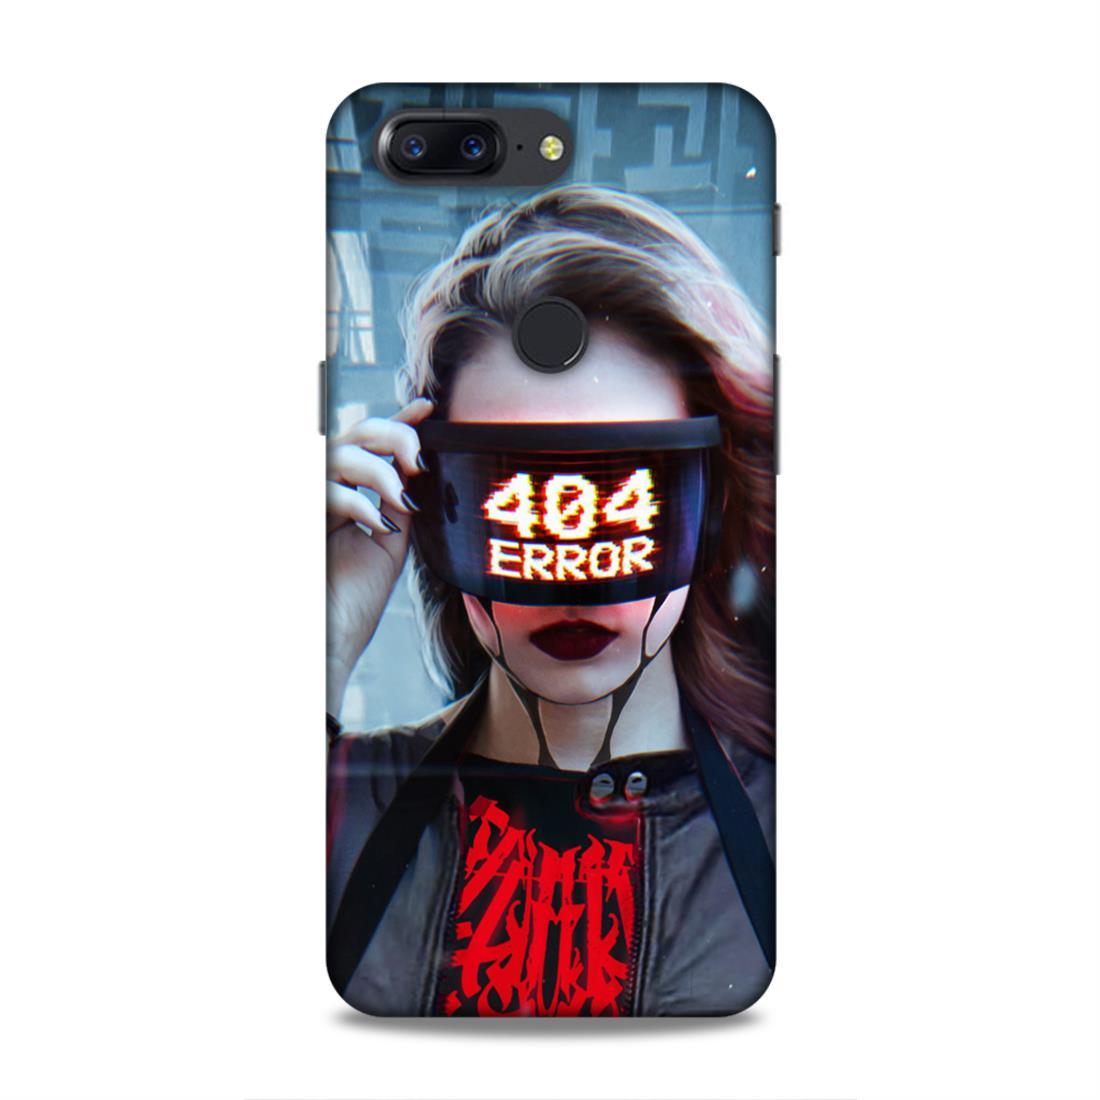 404 Error OnePlus 5T Phone Cover